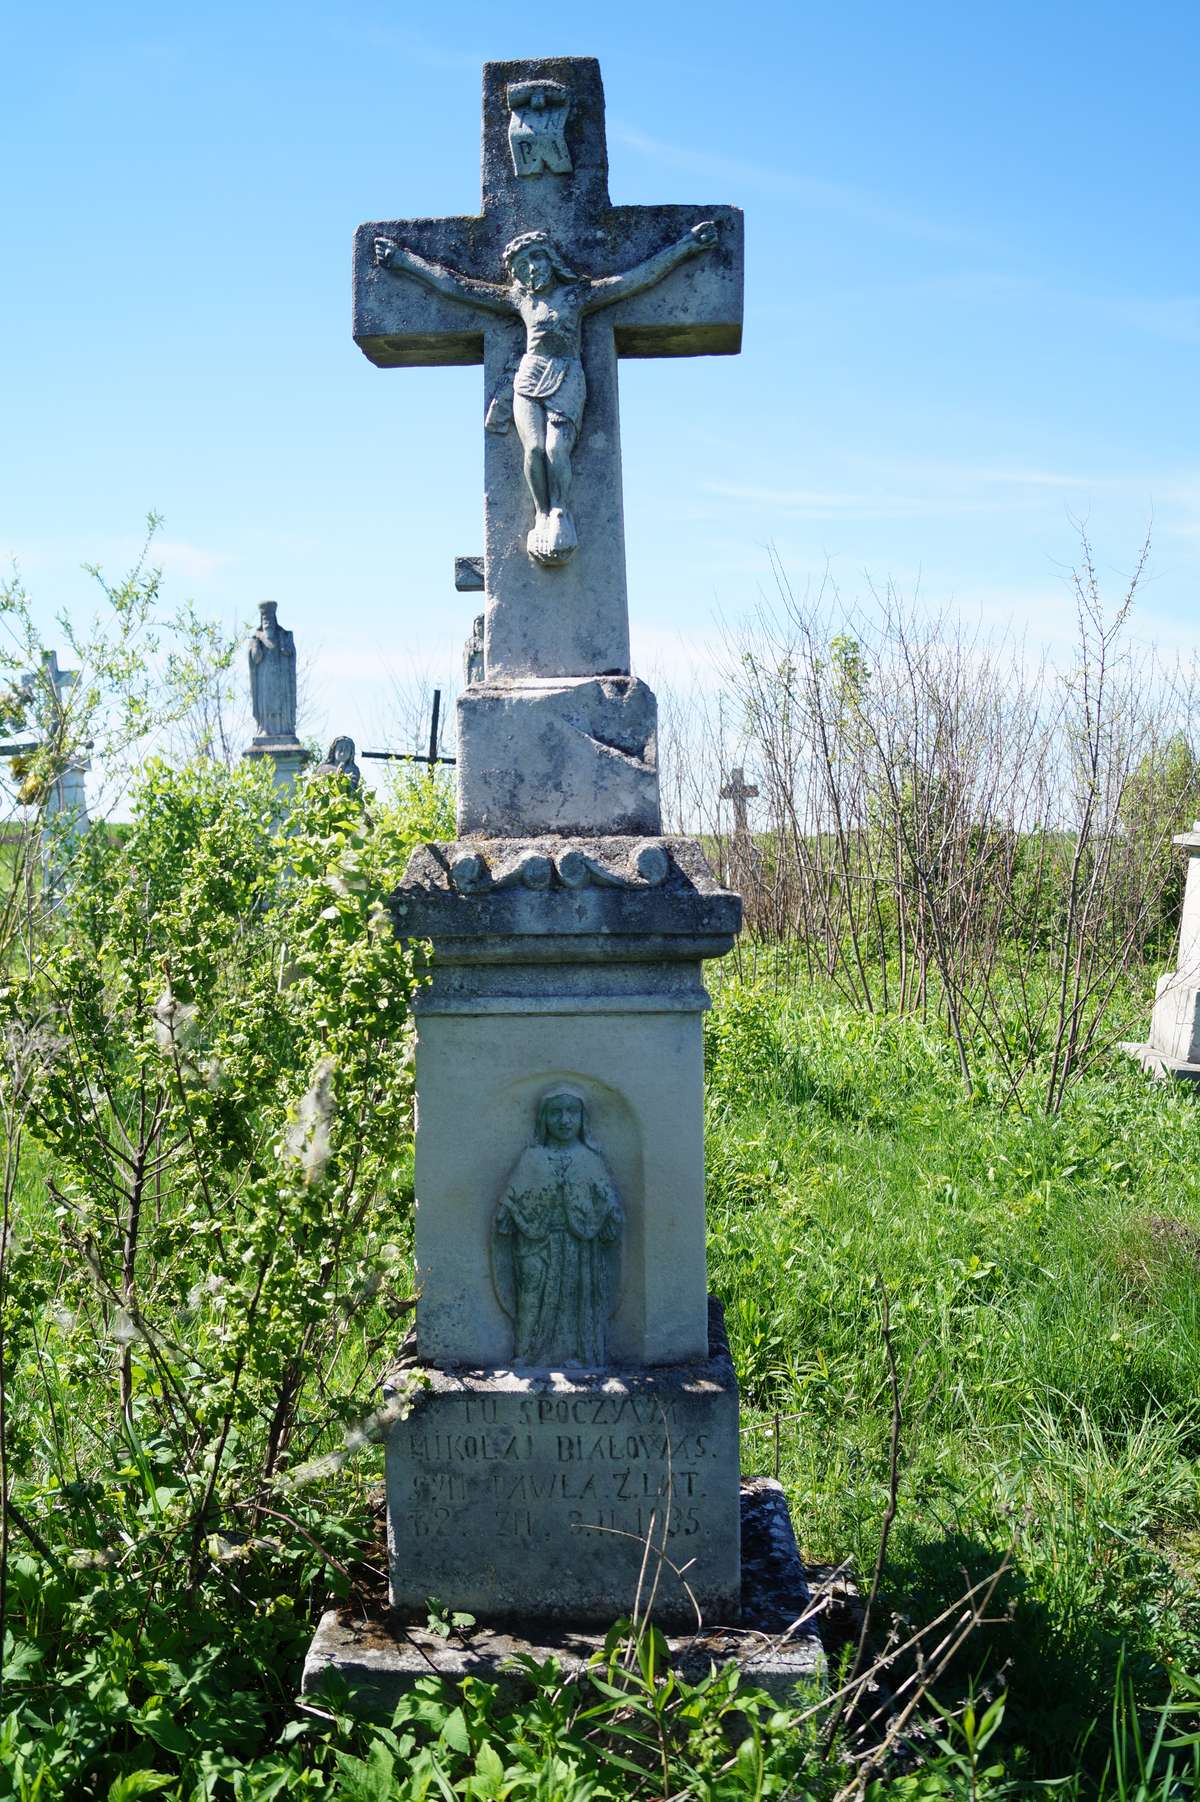 Tombstone of Mikolaj Bialowąs, cemetery in Ihrowica